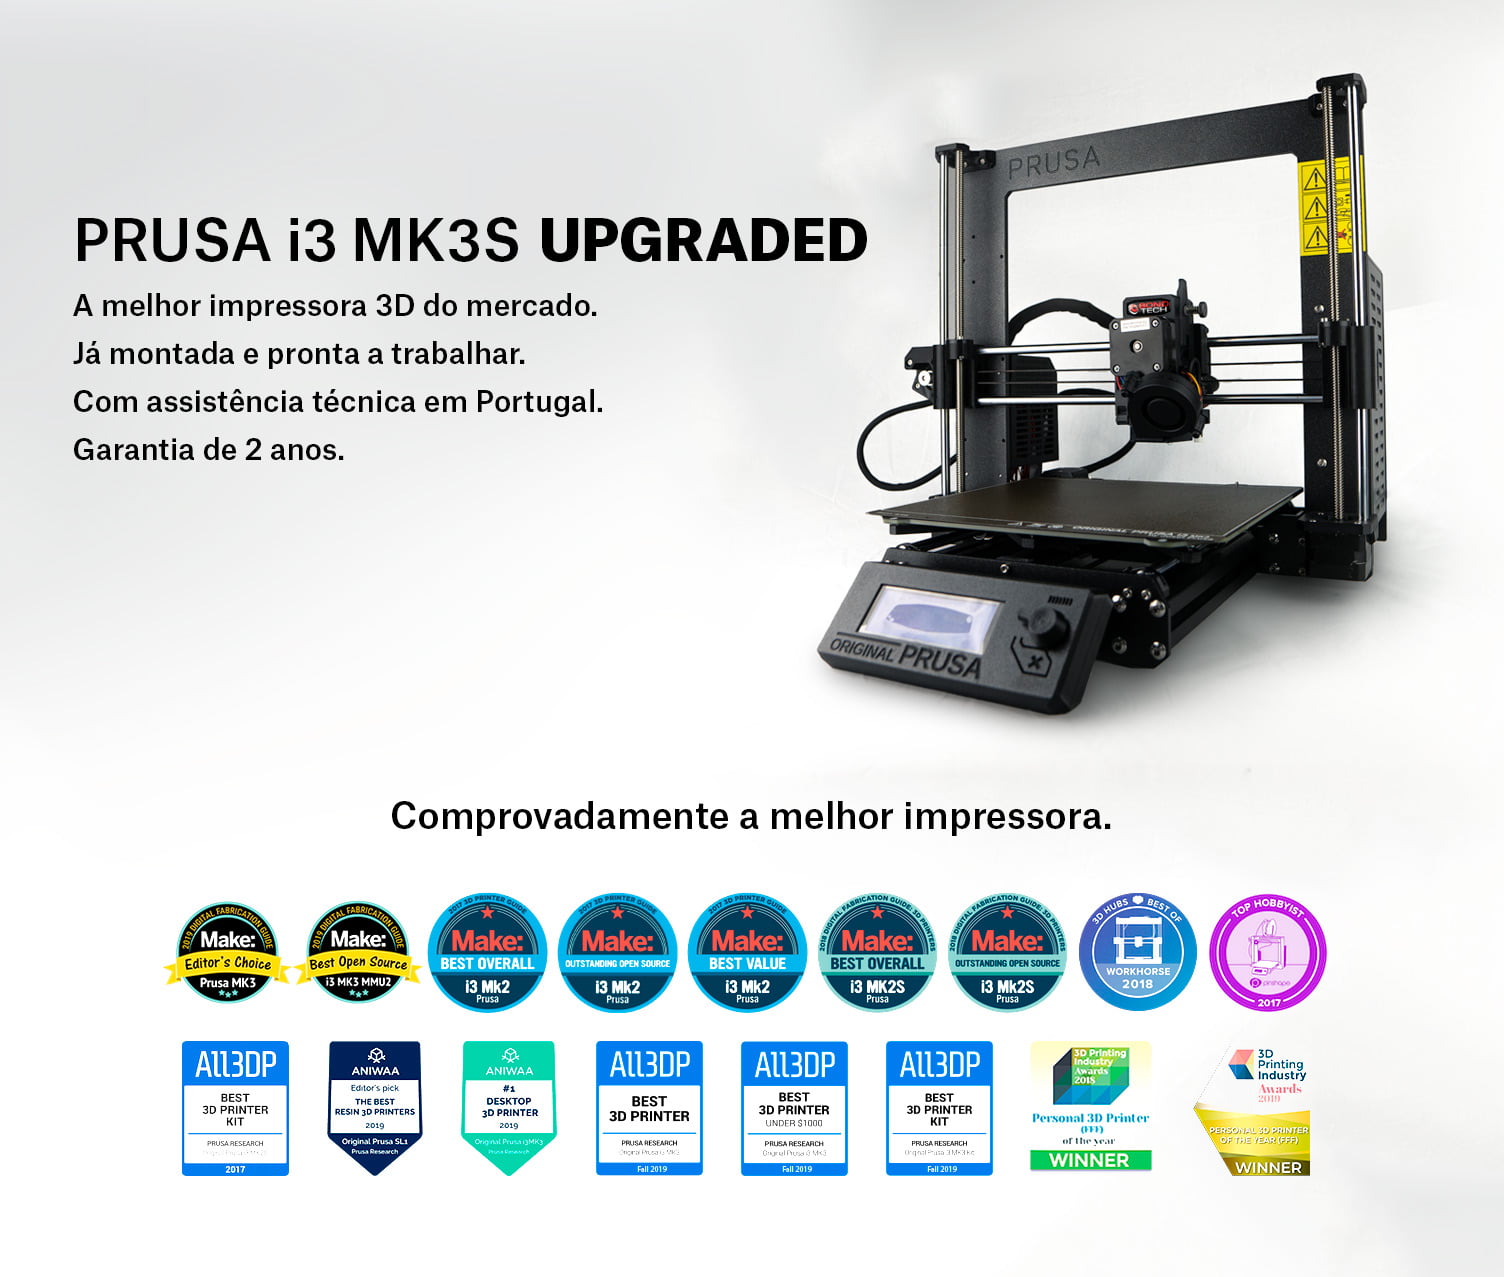 Impressora 3D modelo "Prusa i3 MK3S" com Upgrades em Portugal